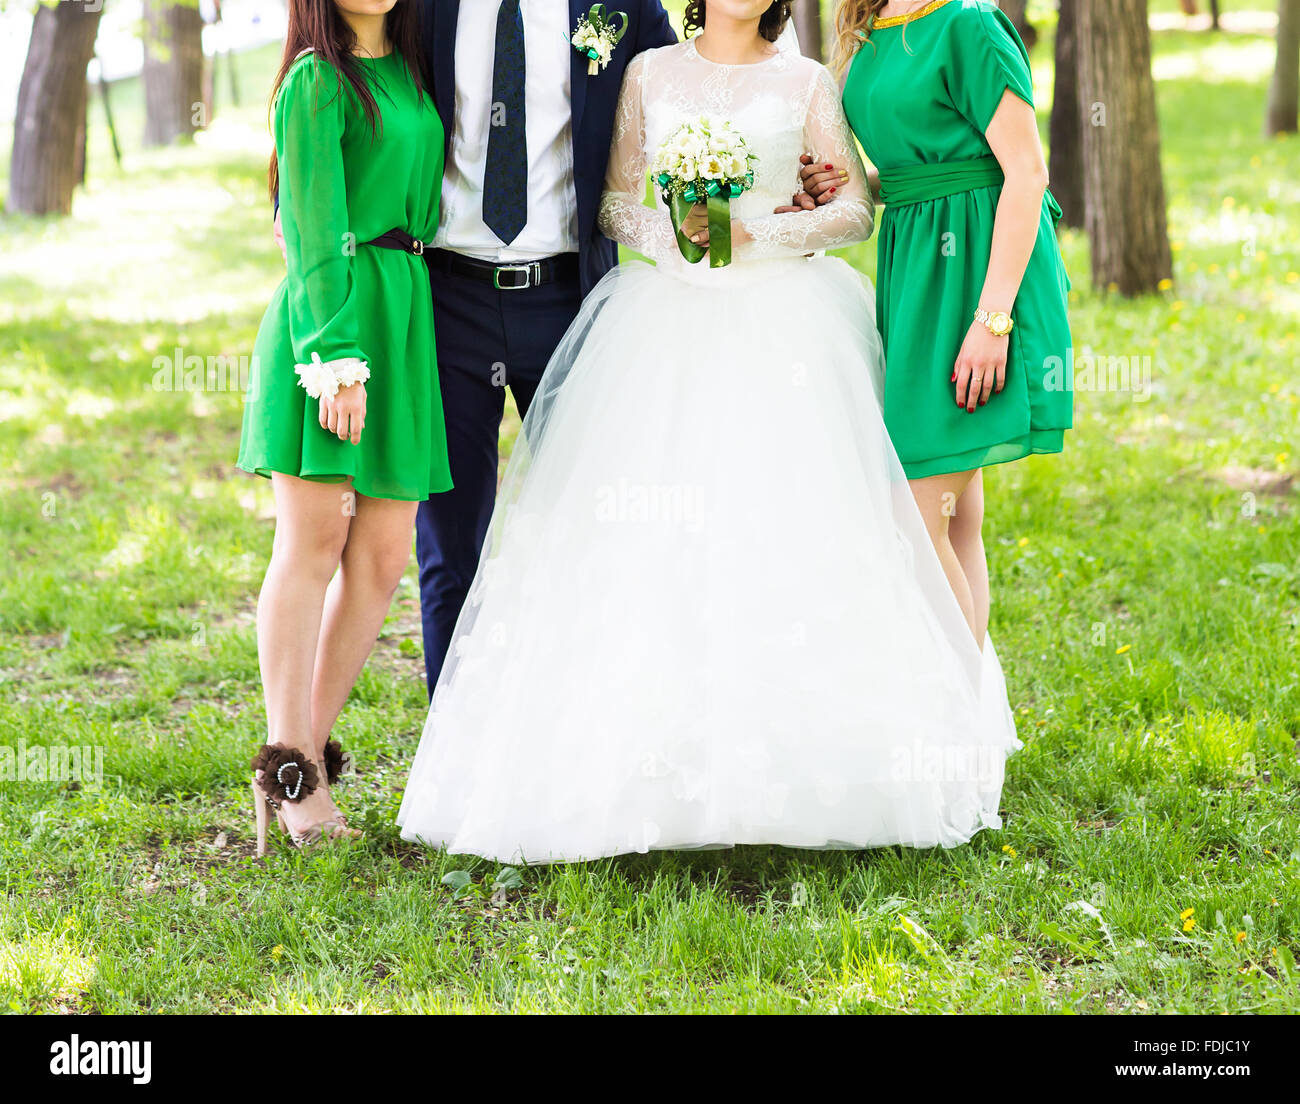 La novia y sus damas de honor vestidos de verde claro vestidos bridesmaid  Fotografía de stock - Alamy